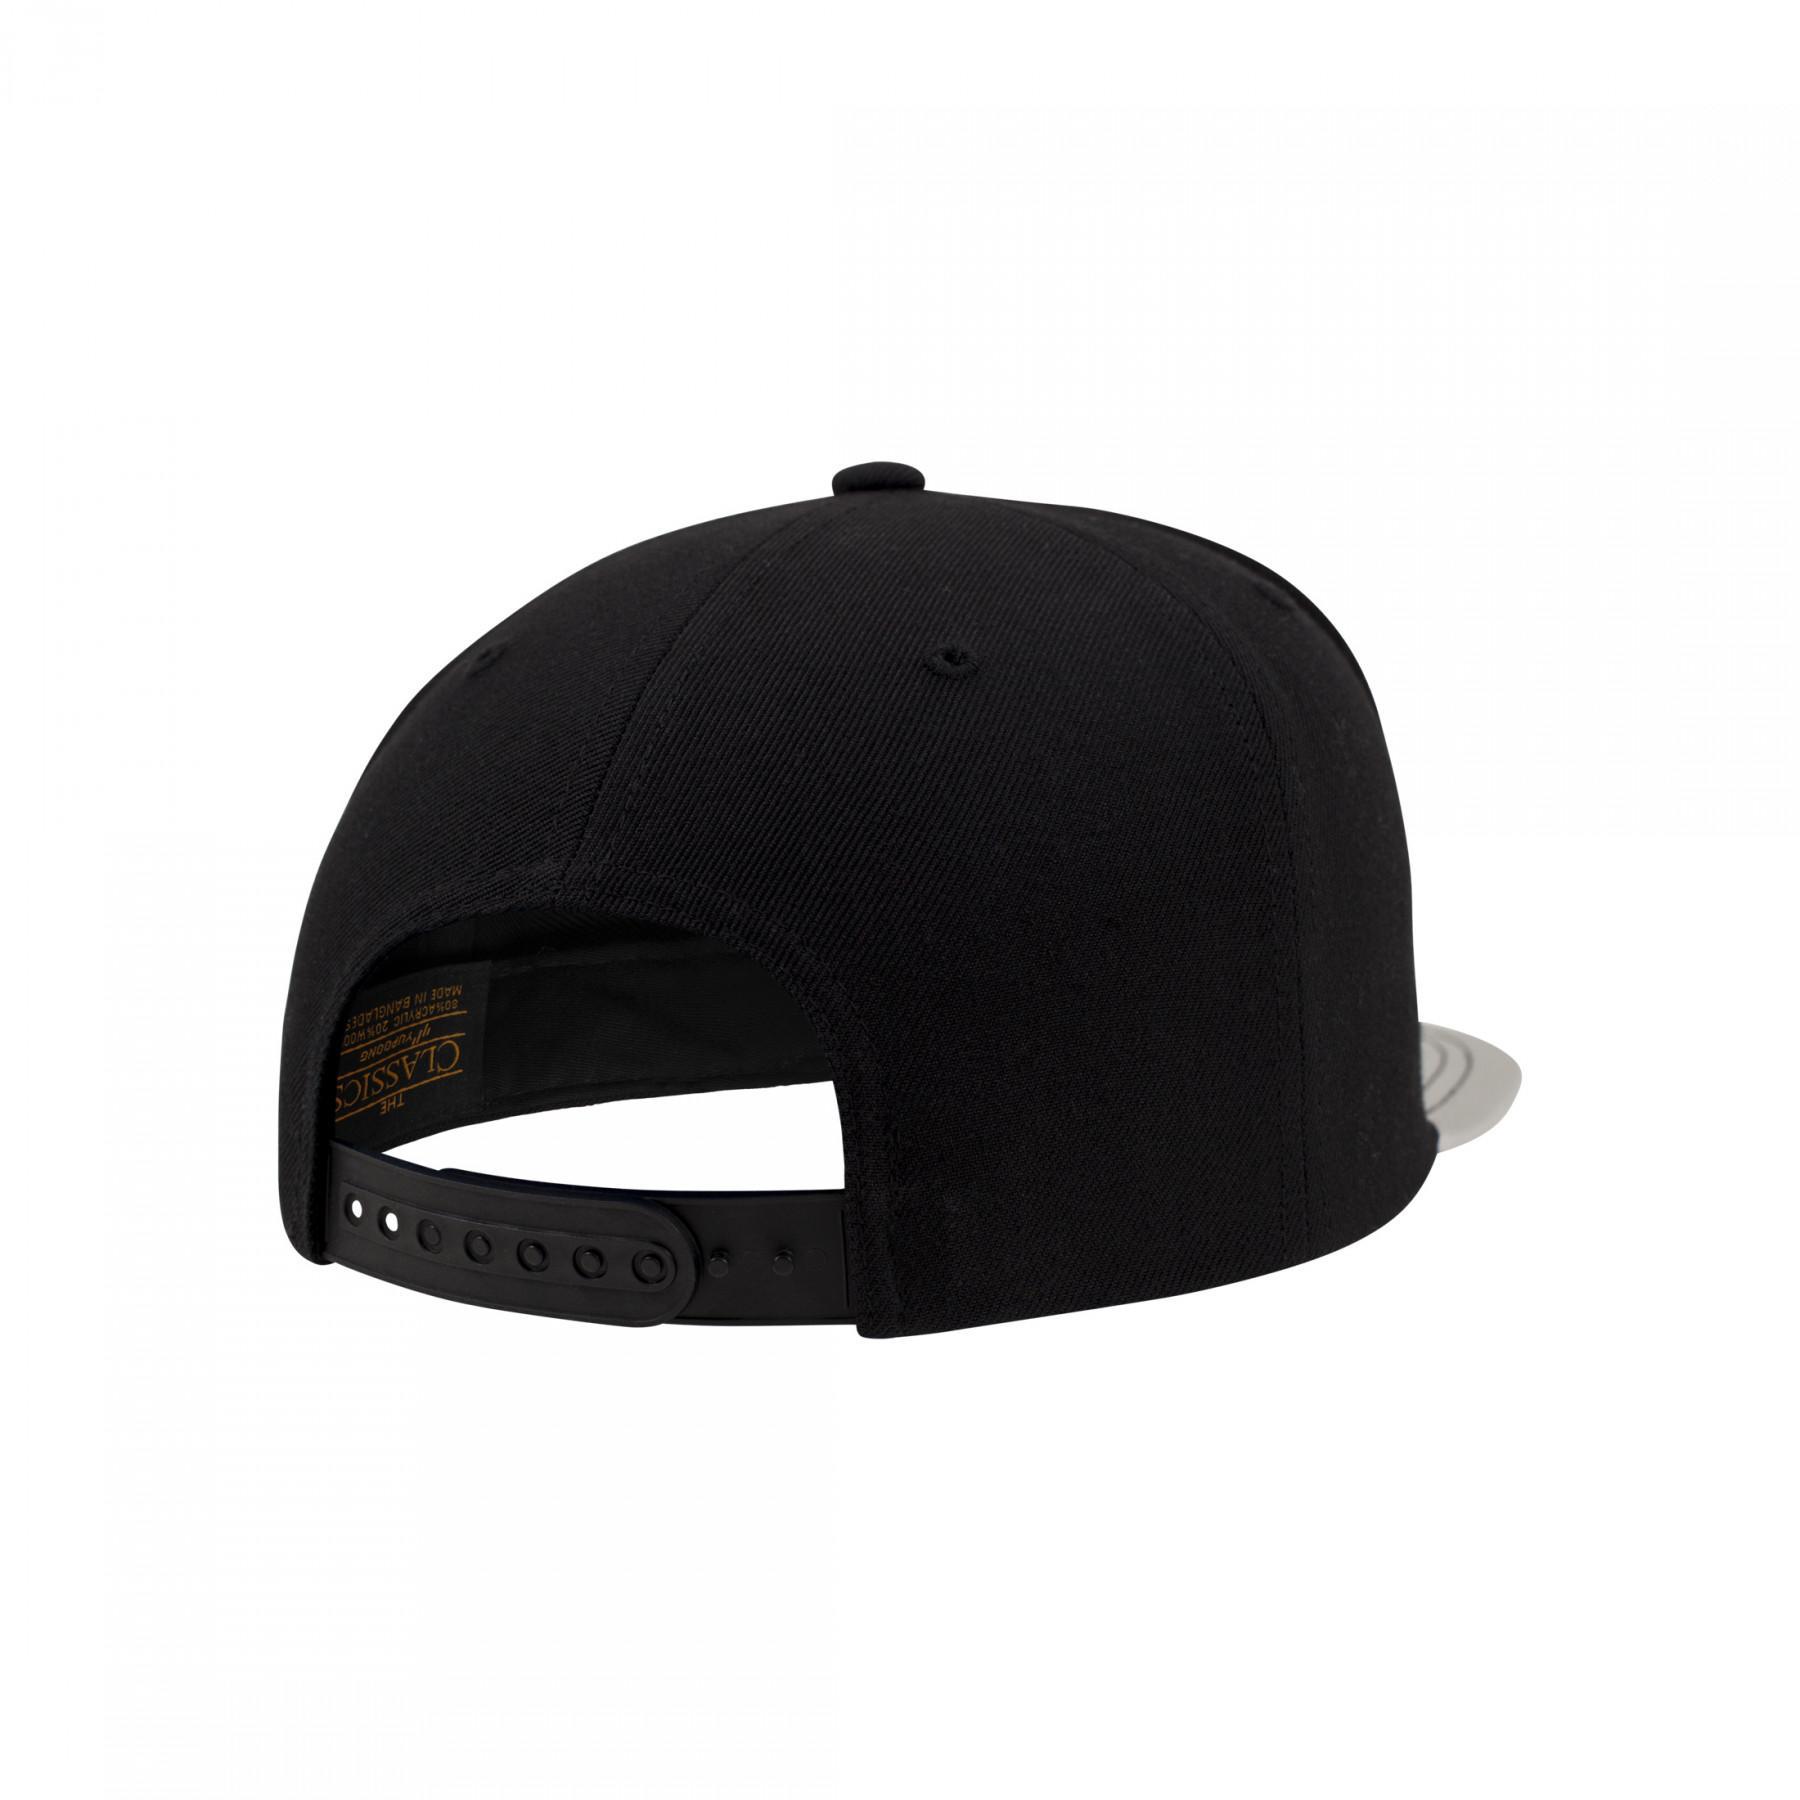 Cap Flexfit metallic visor